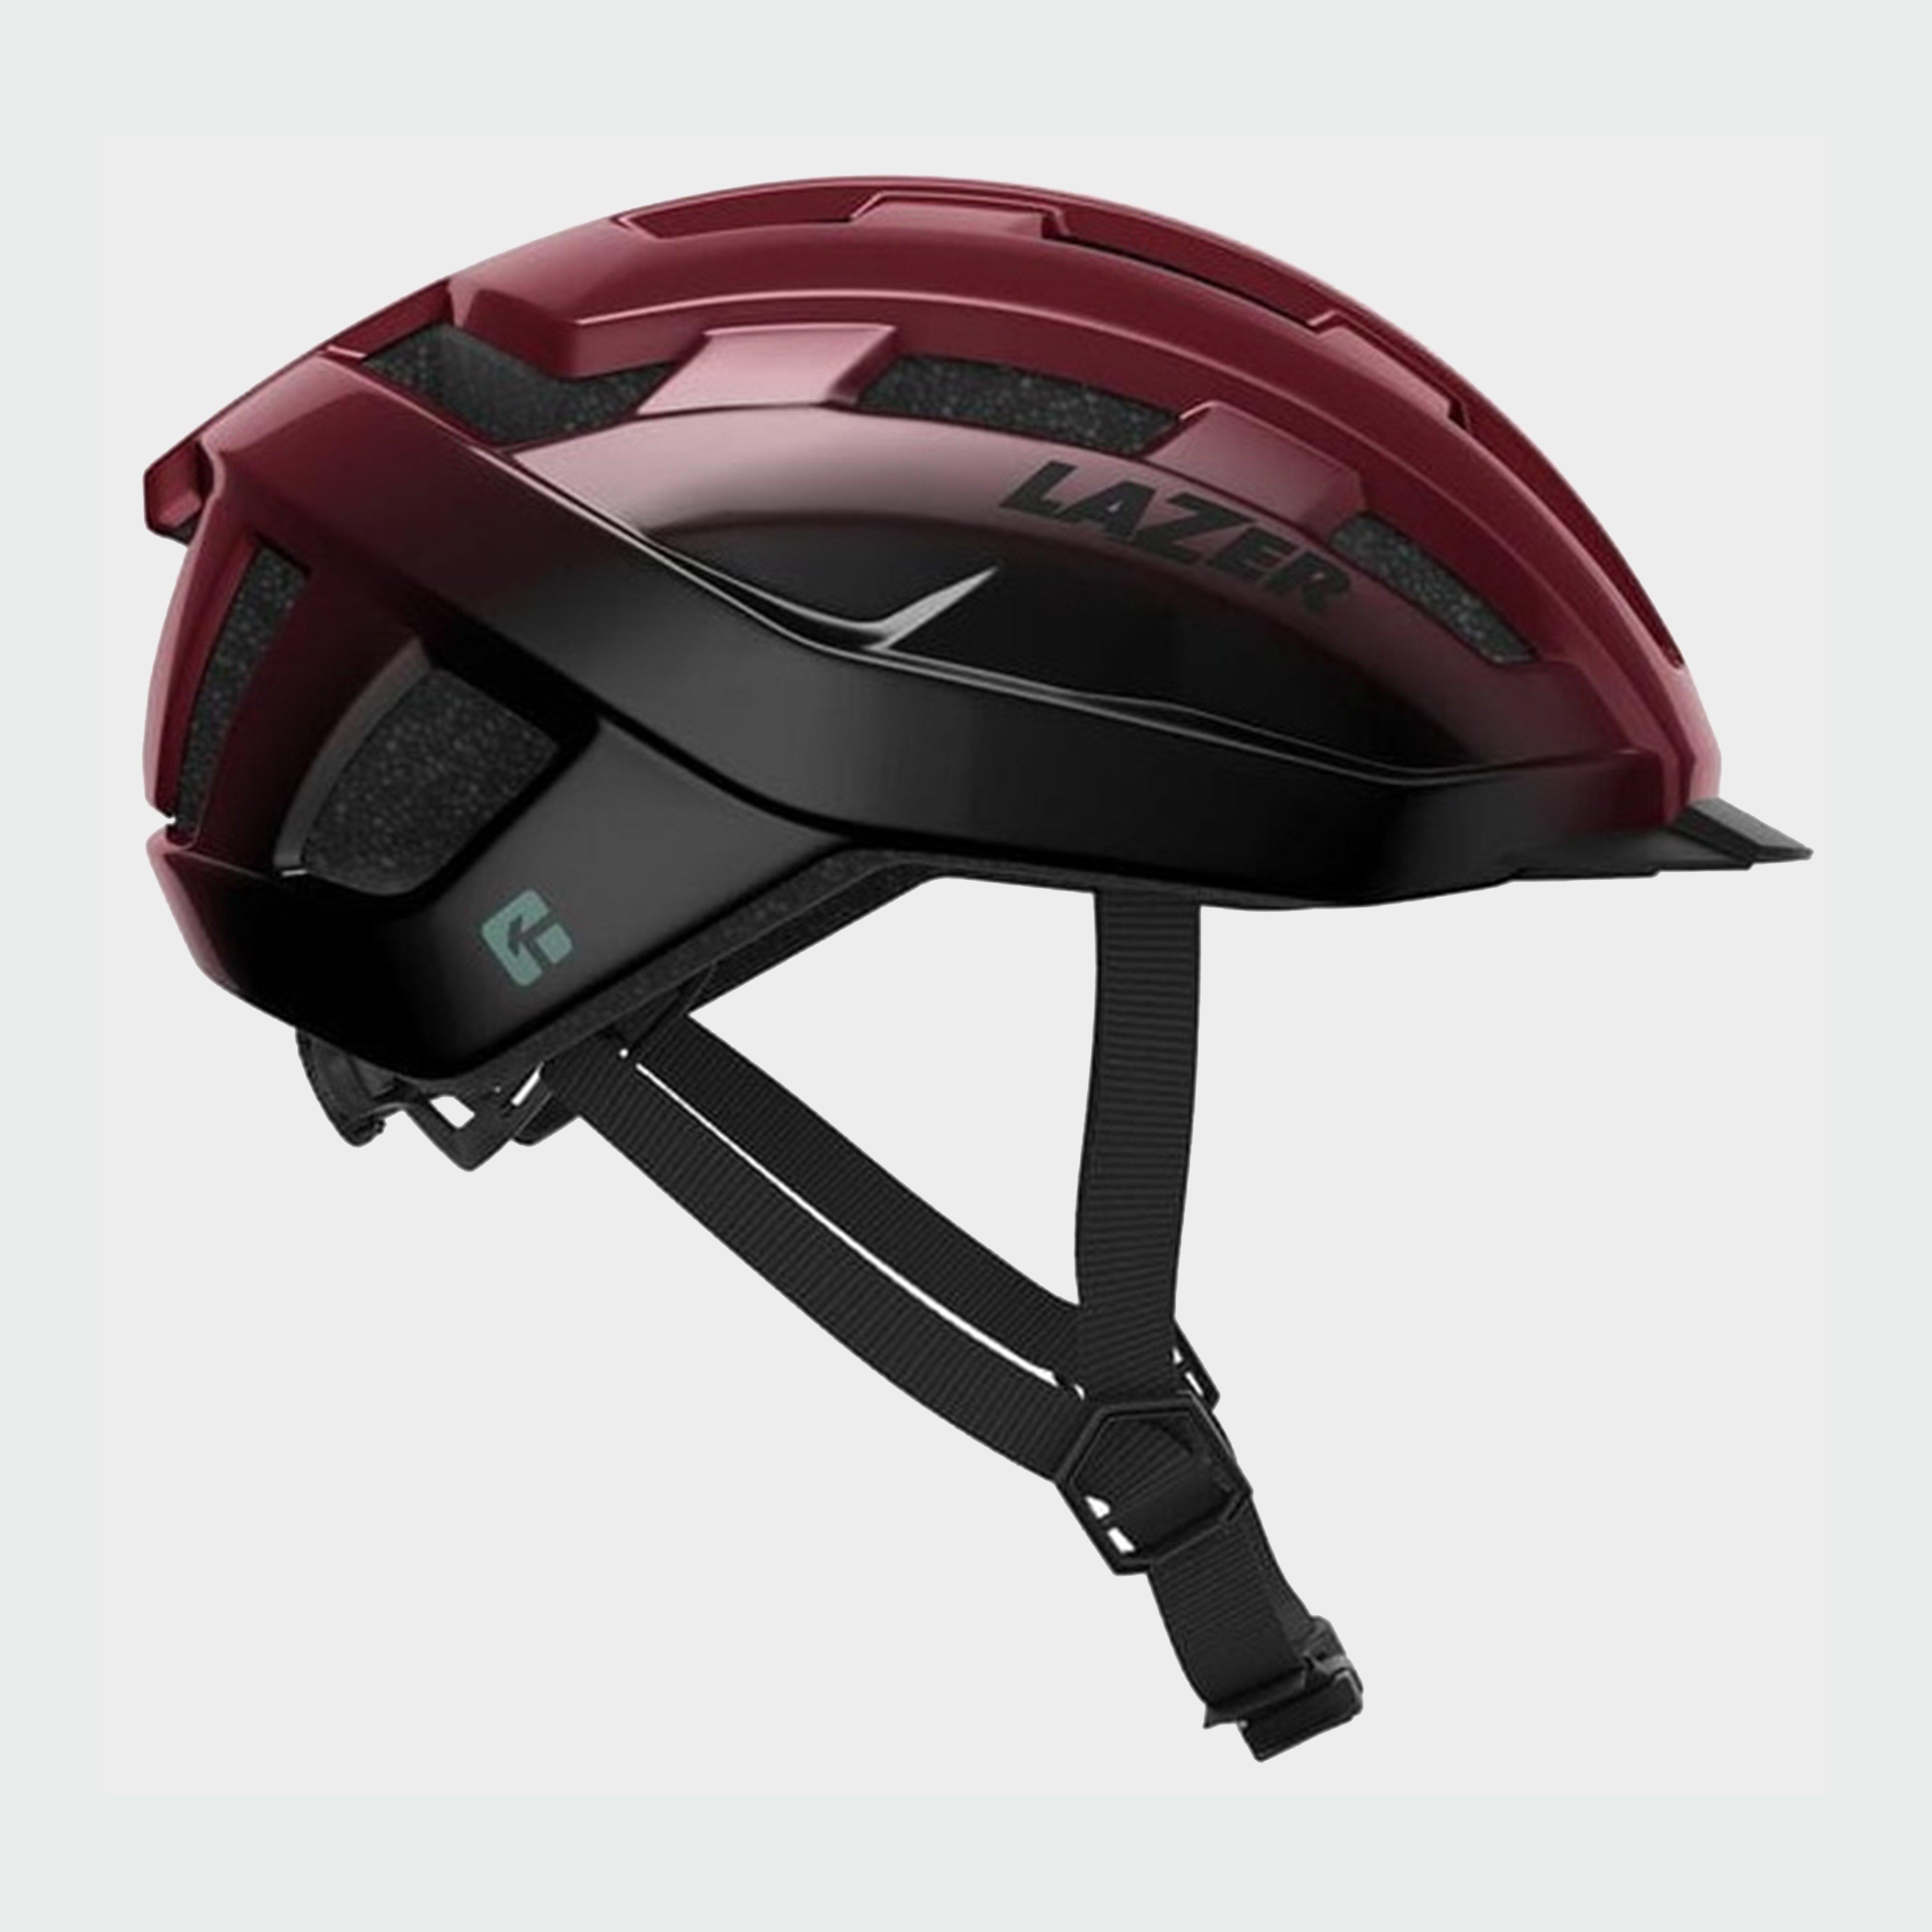 Lazer Lazer Codax Kineticore Cycling Helmet - Berry, BERRY